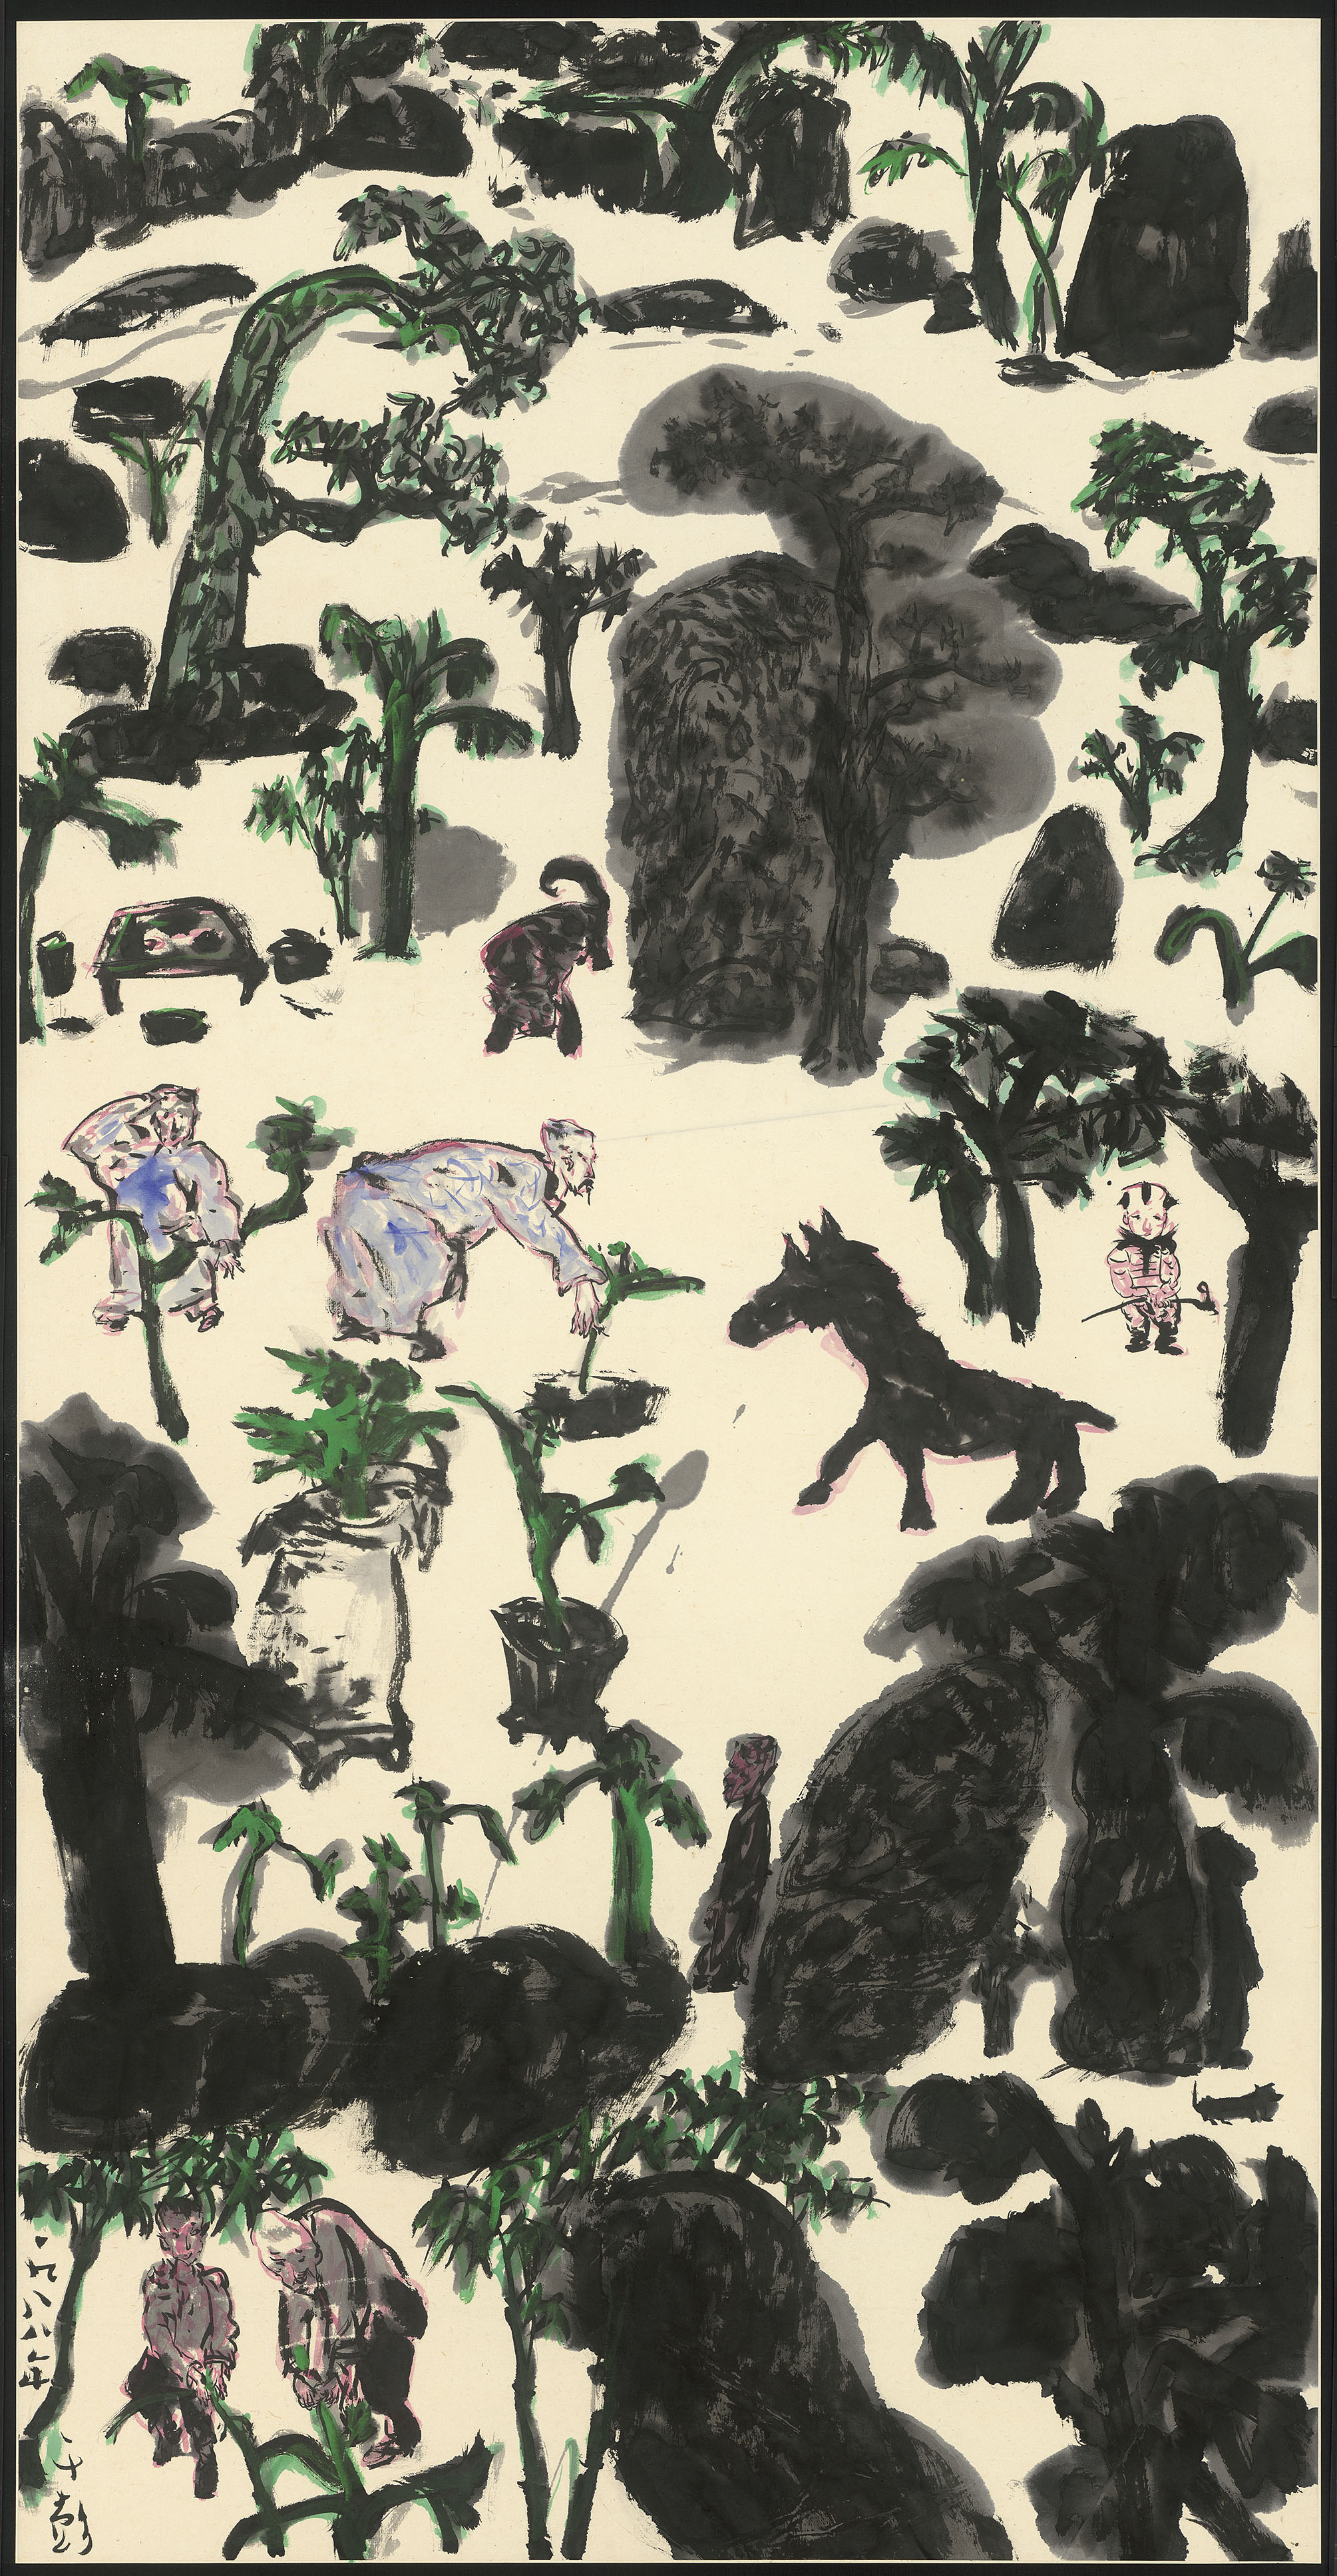 07_人物・樹石・怪獸,134.6x68.9cm(10.3才), 1988